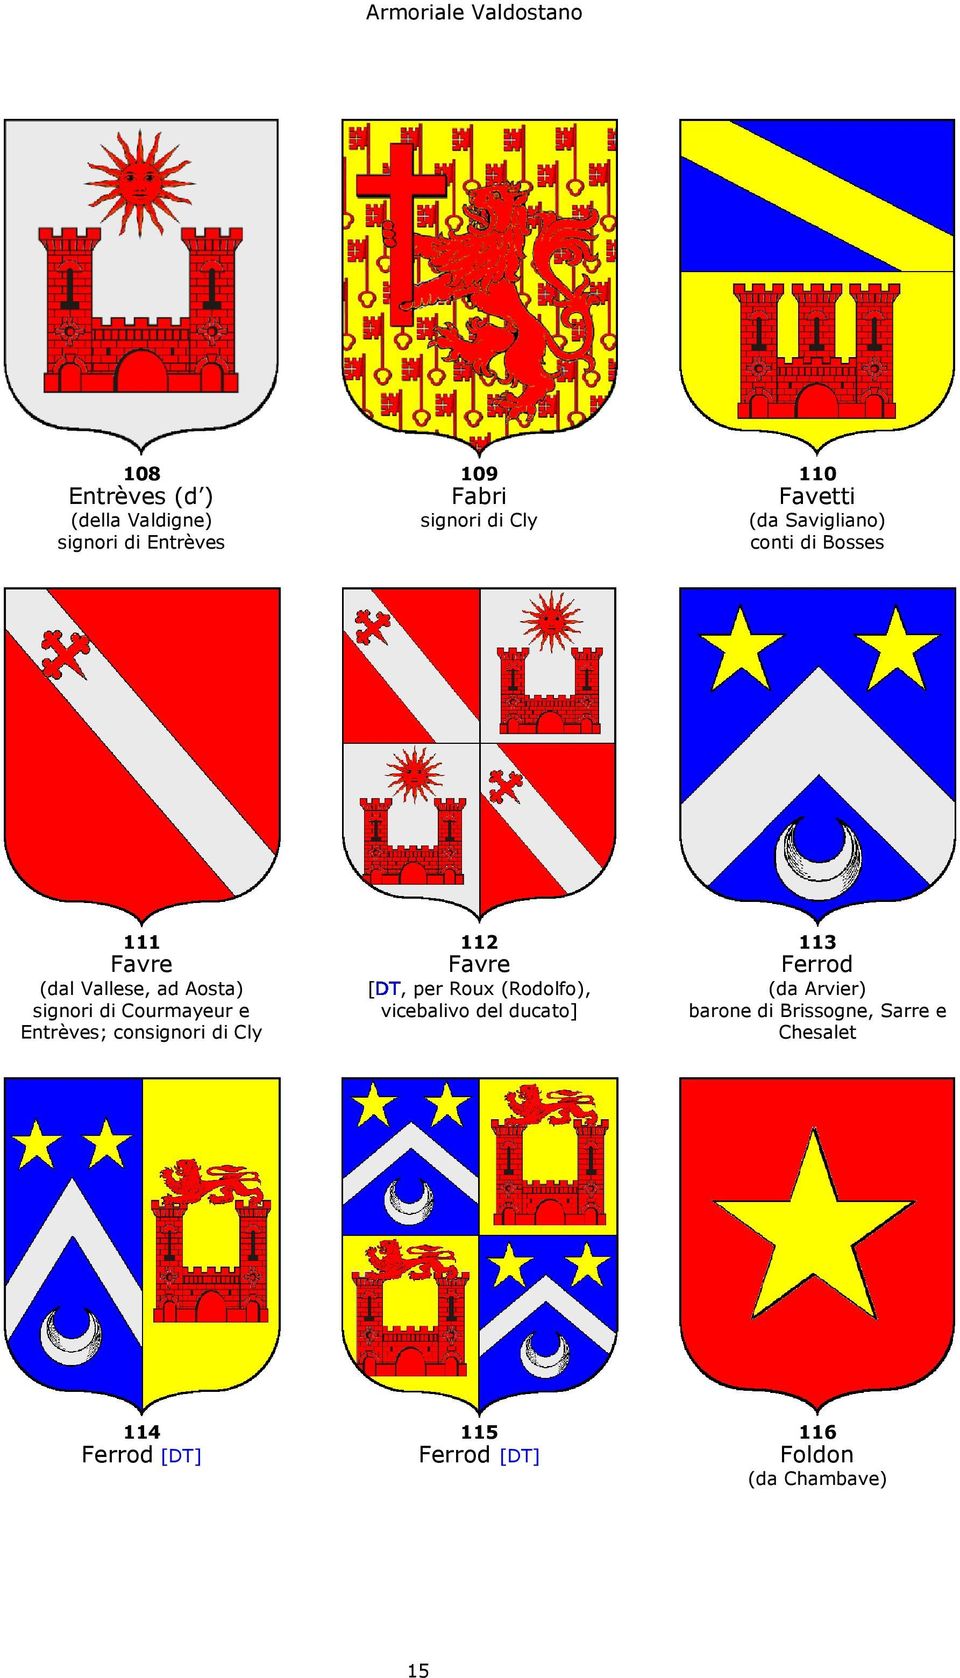 ducato] (dal Vallese, ad Aosta) signori di Courmayeur e Entrèves; consignori di Cly (da Arvier)